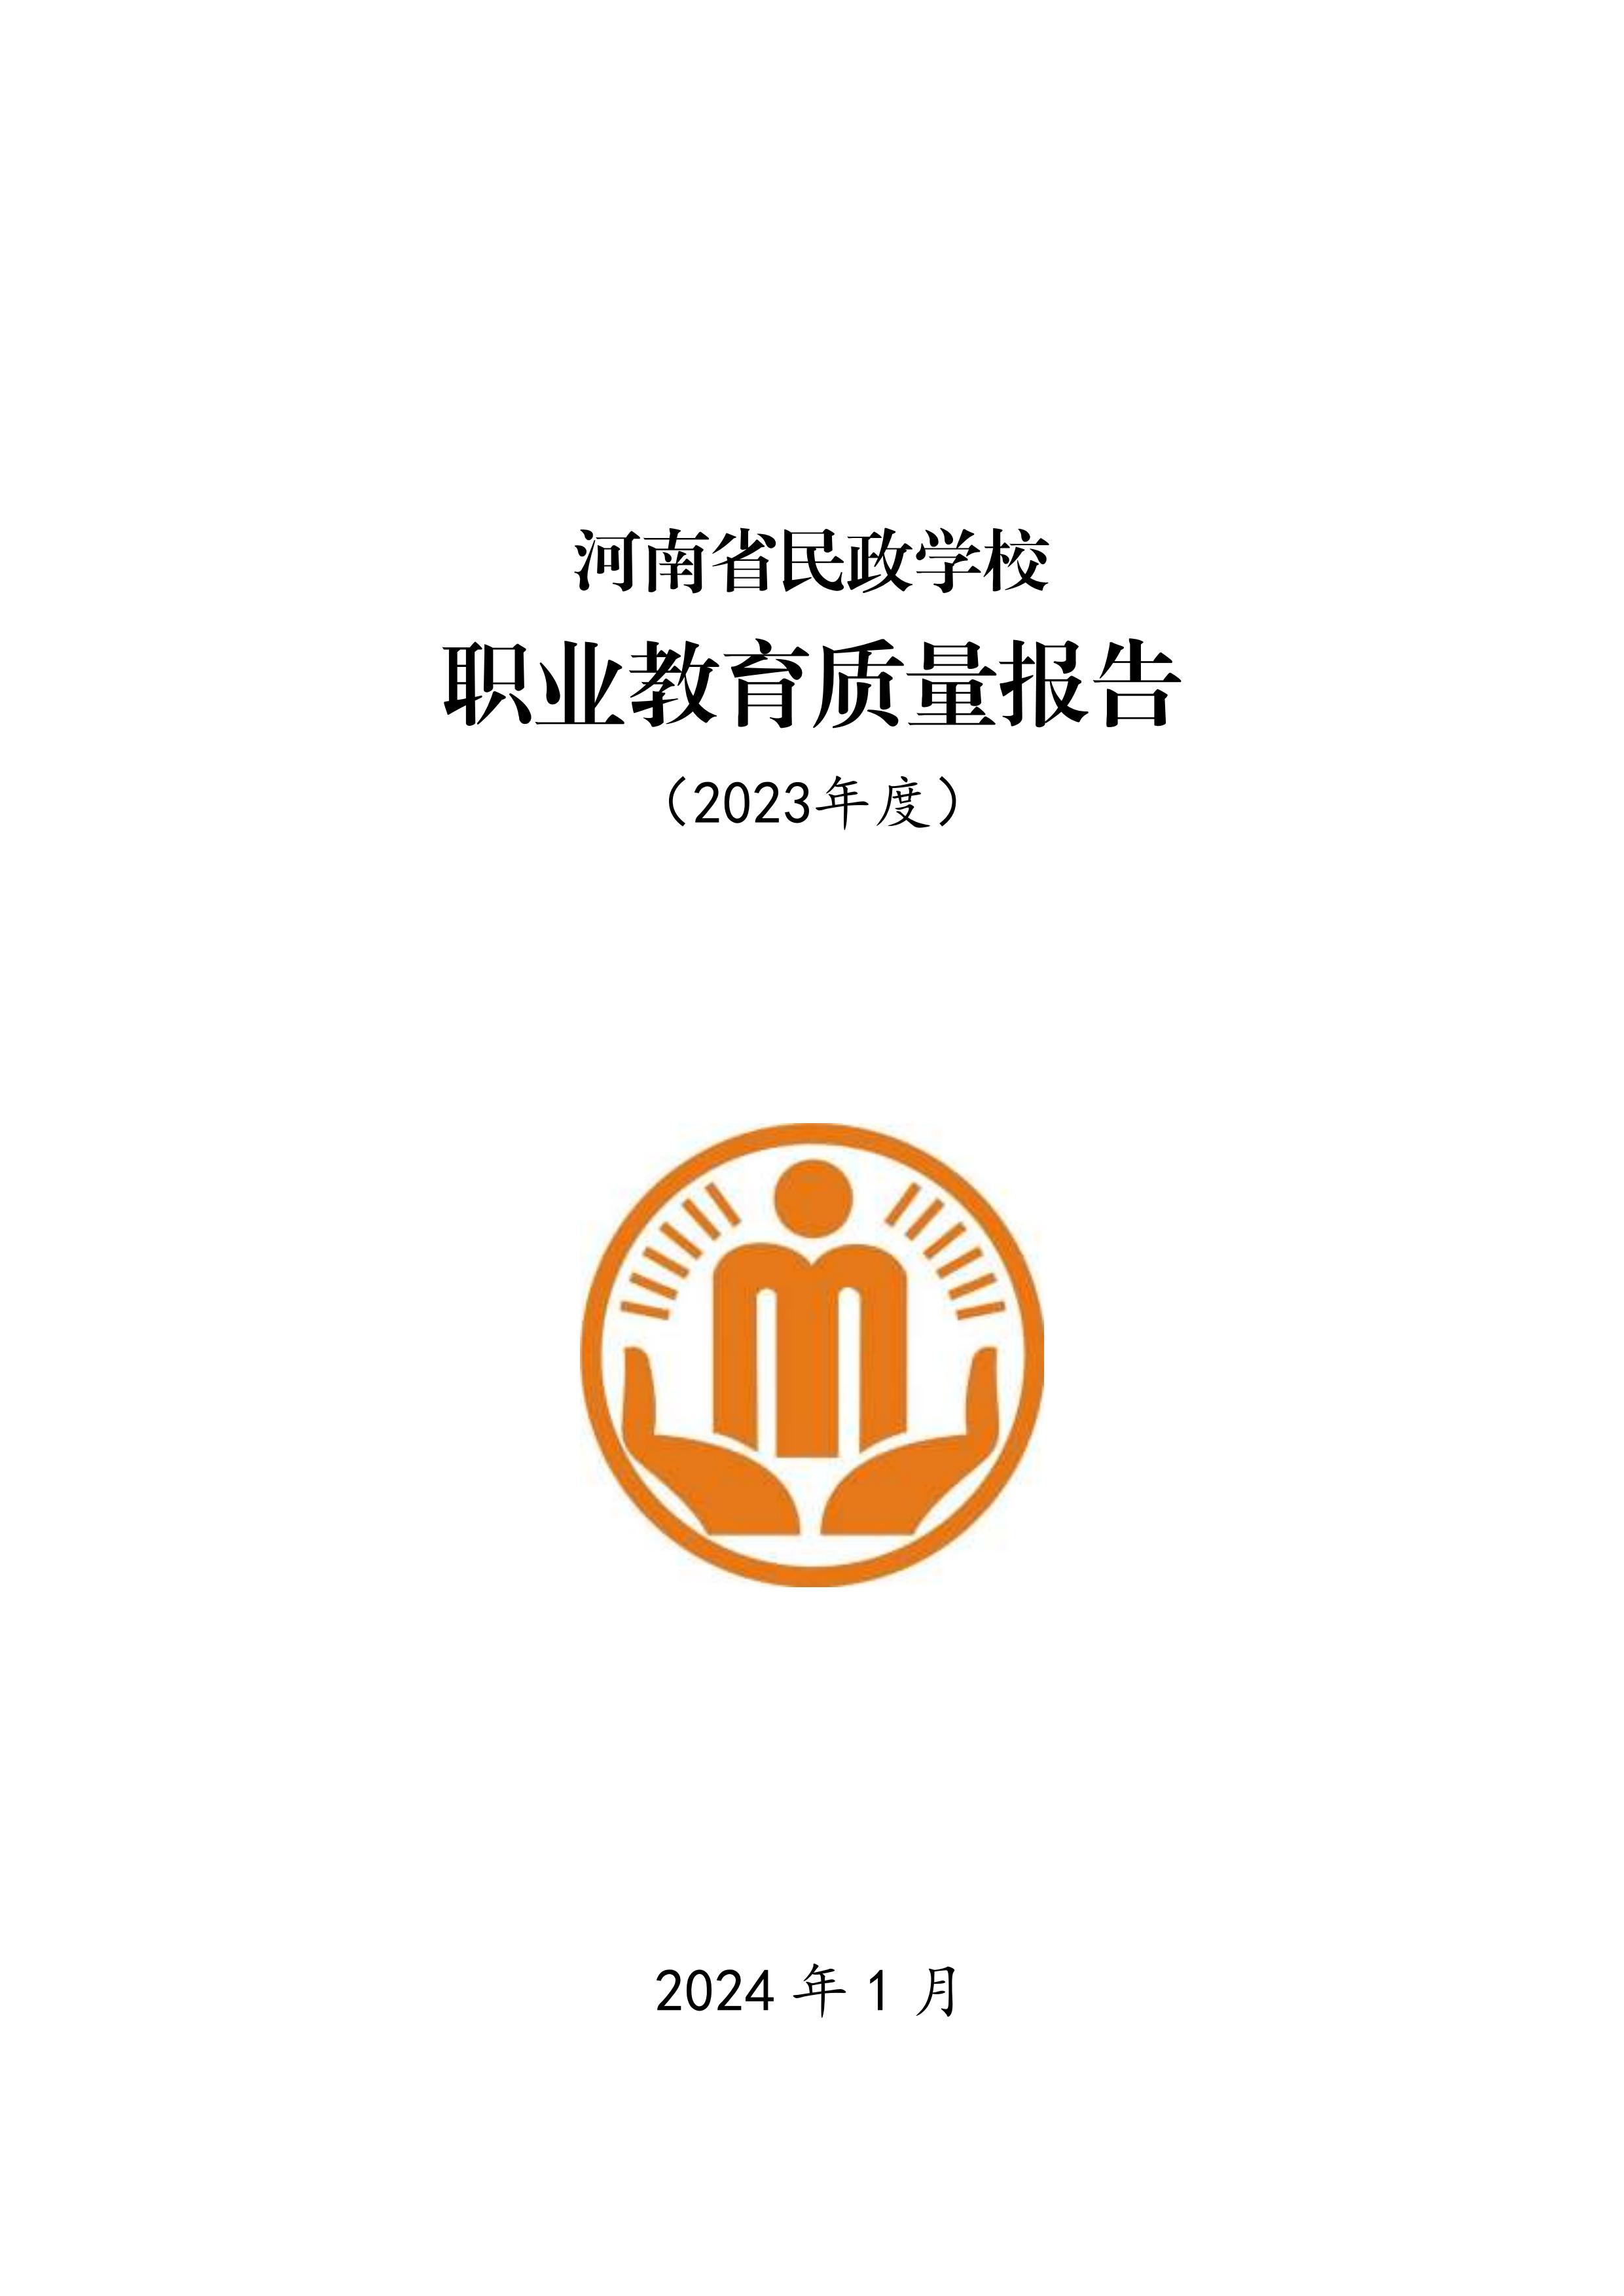 河南省民政学校职业教育质量报告（2023年度）发布版_00.jpg